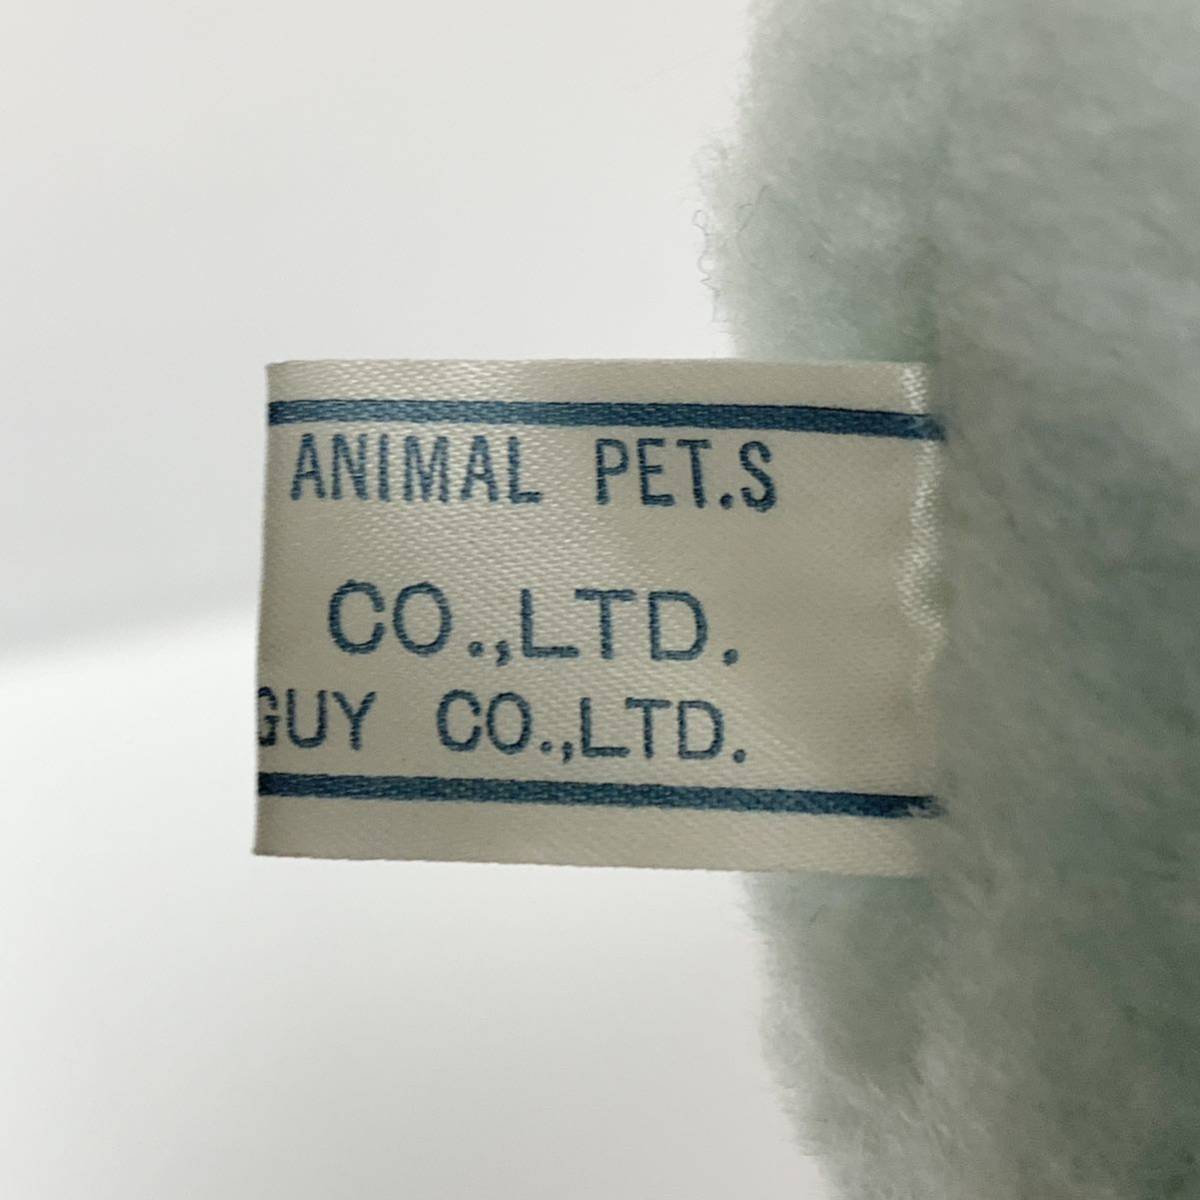 GUY ORIGINAL ANIMAL PET.S корова мягкая игрушка корова .. бледно-голубой с биркой Showa Retro подлинная вещь высота примерно 12.